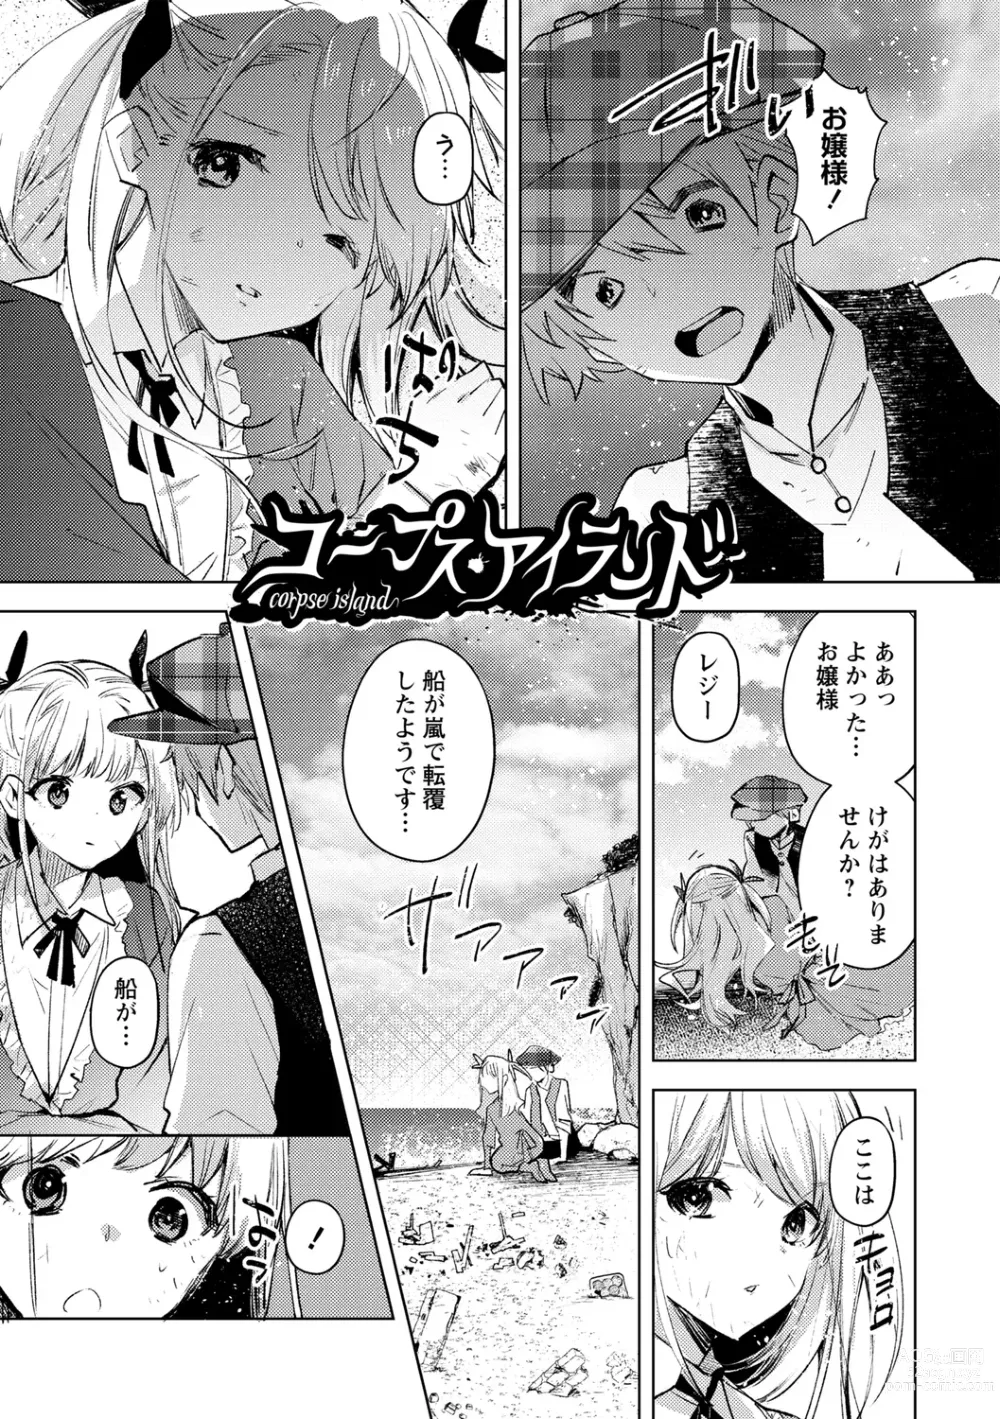 Page 9 of manga Bad endroll